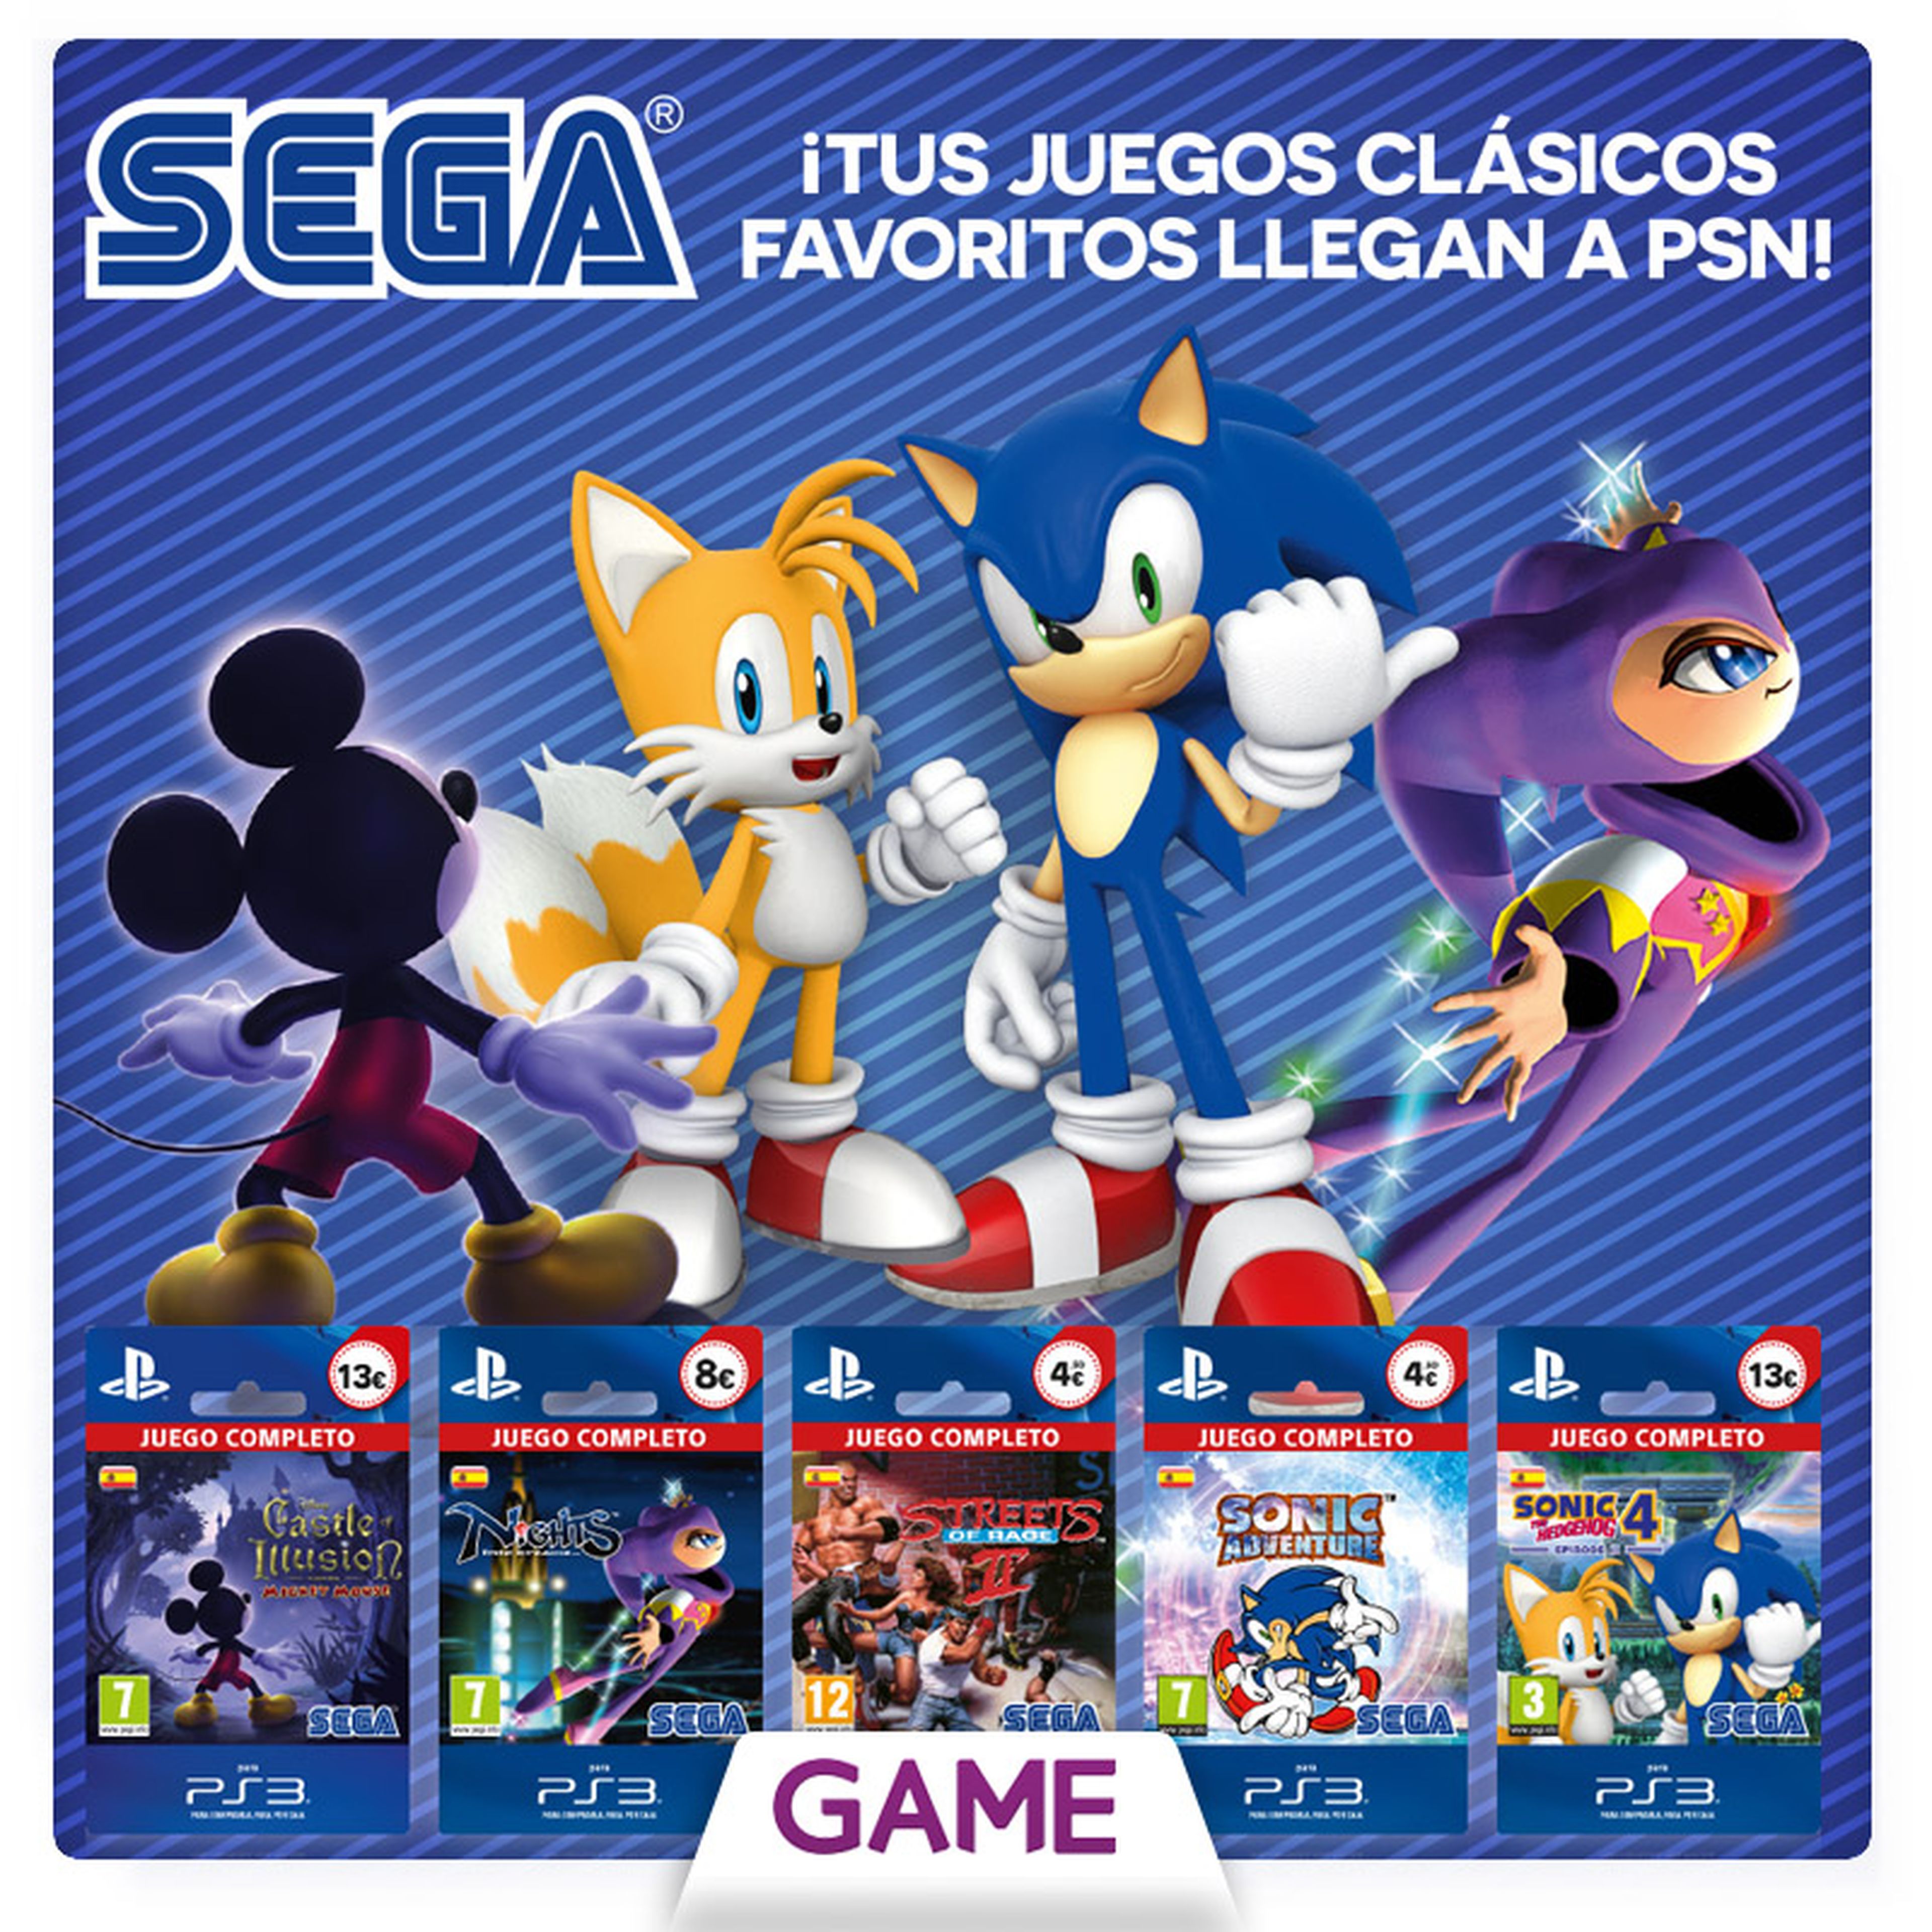 Juegos clásicos de SEGA para PS3 a la venta en GAME